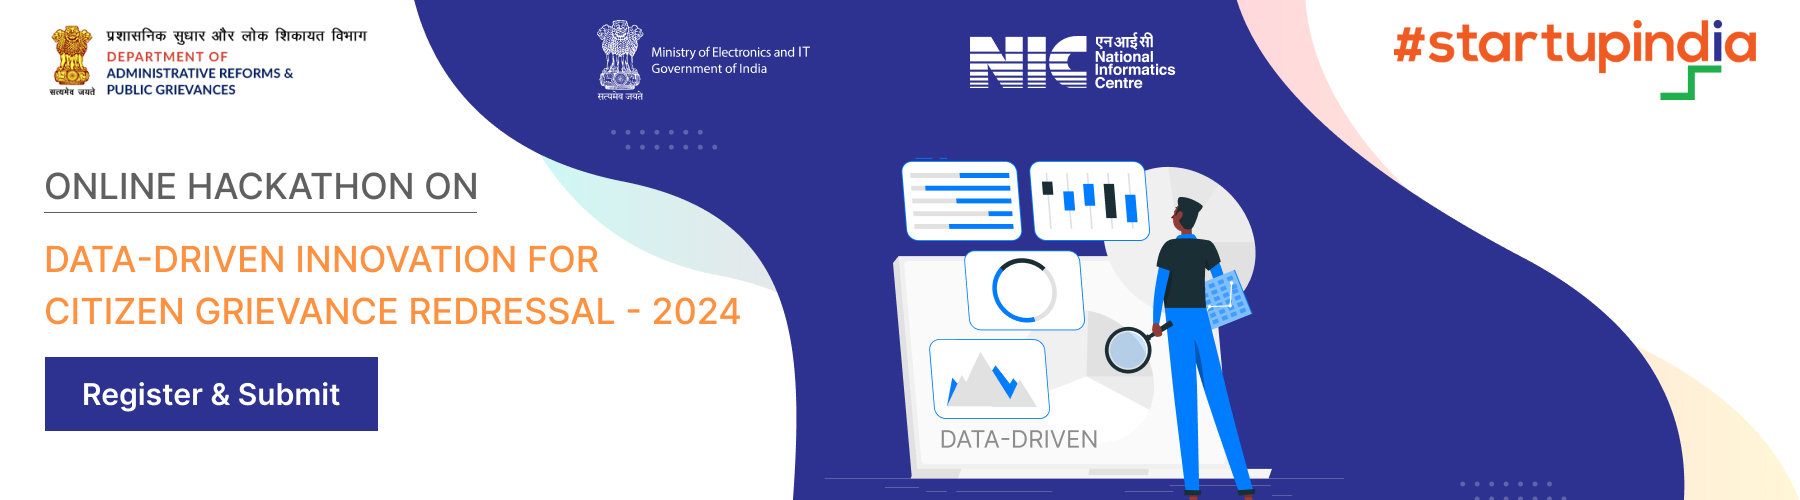 નાગરિકોની ફરિયાદ નિવારણ માટે ડેટા-સંચાલિત ઇનોવેશન પર ઓનલાઇન હેકાથોન - 2024